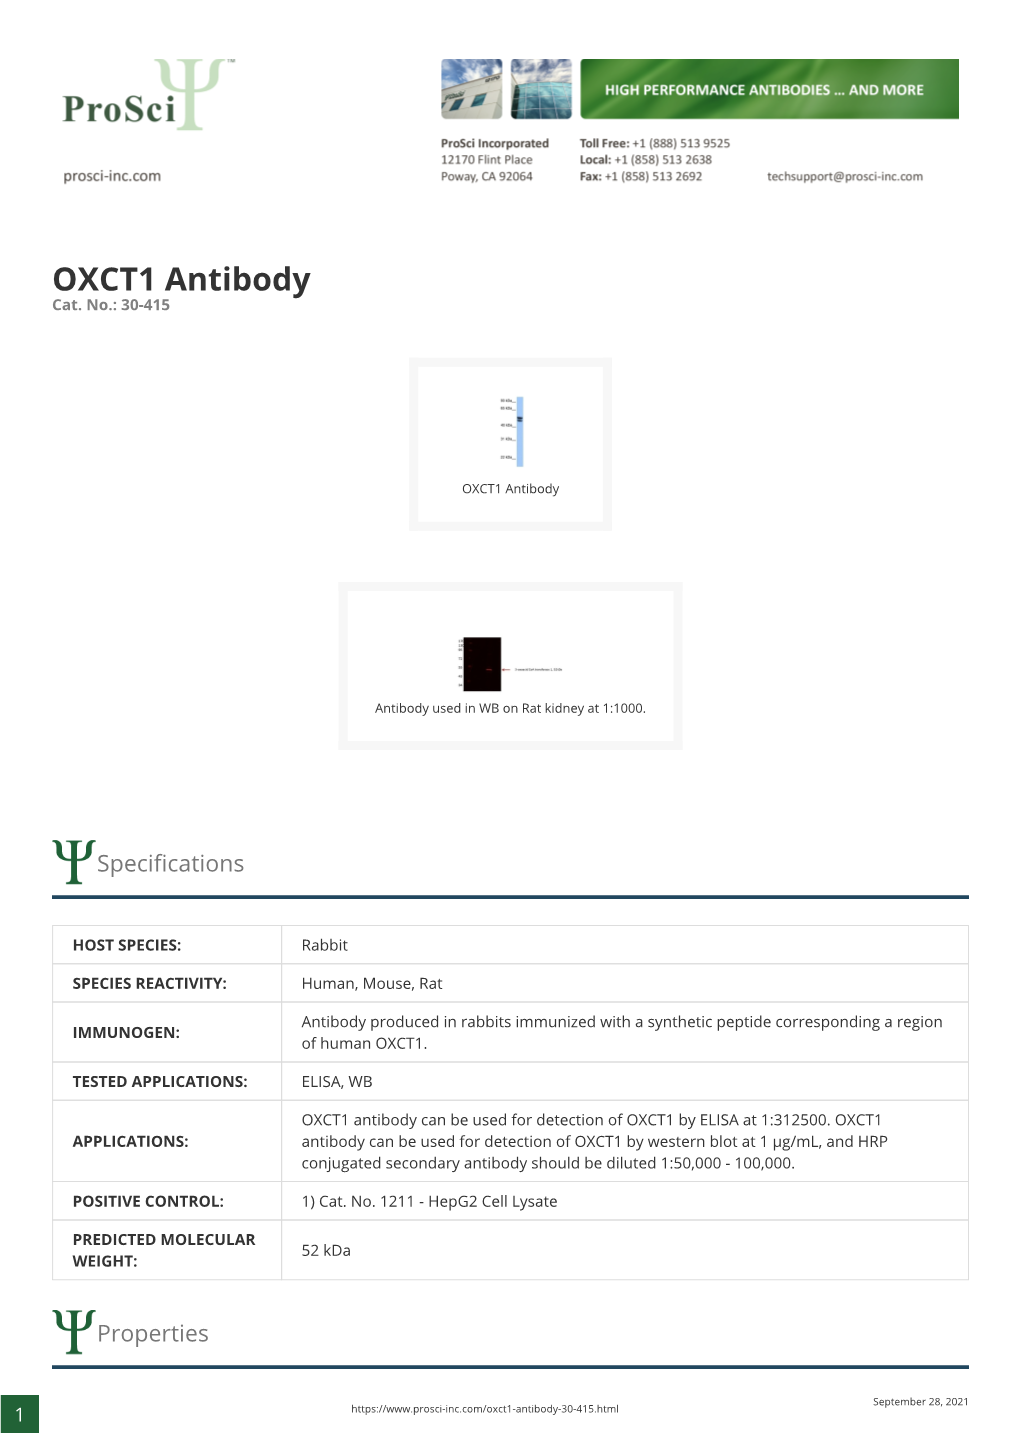 OXCT1 Antibody Cat